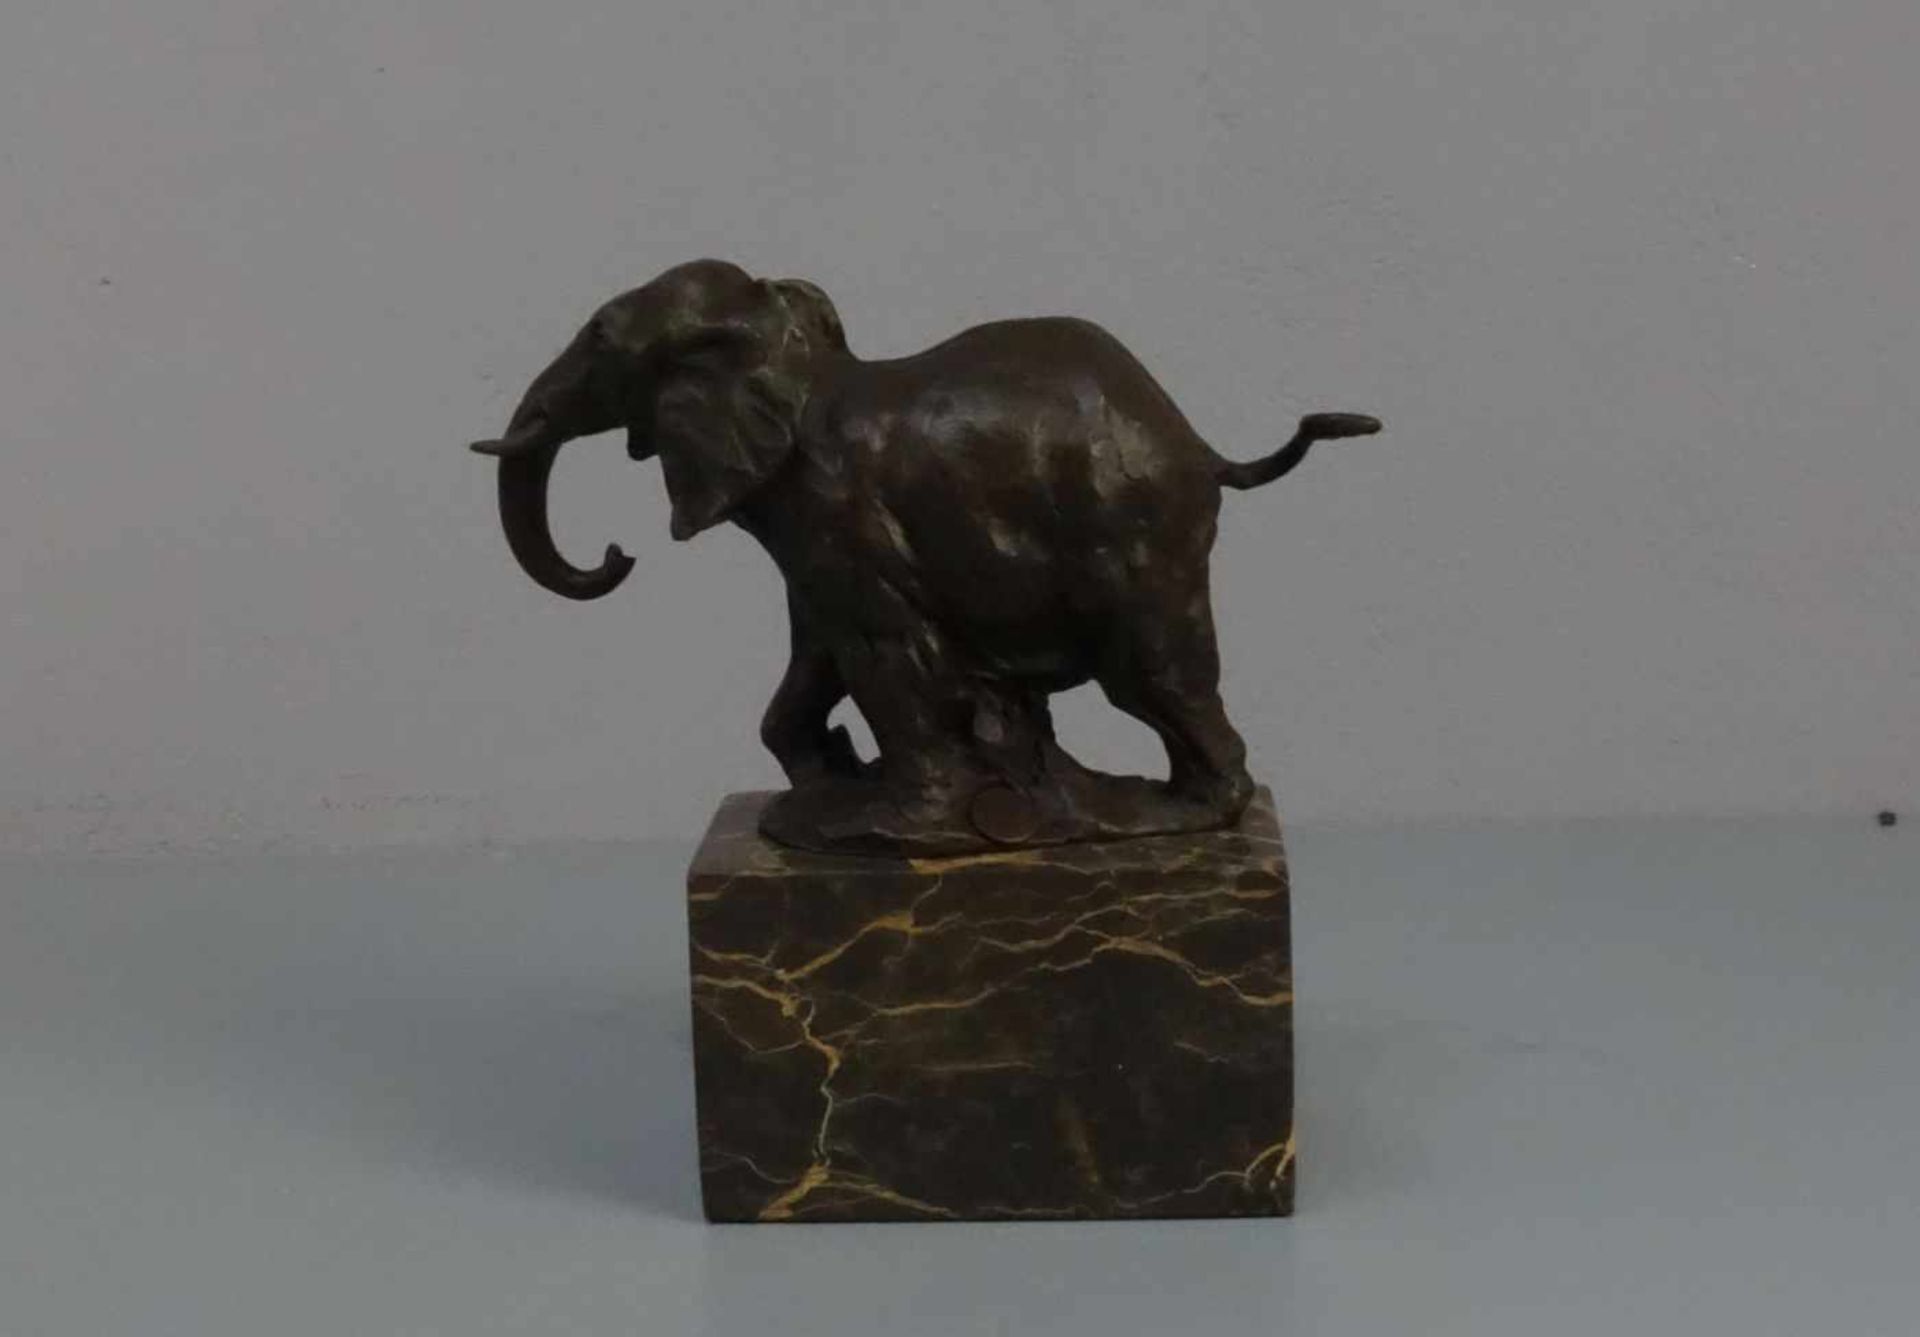 LOPEZ, MIGUEL FERNANDO (auch Milo, geb. 1955 in Lissabon), Skulptur / sculpture: "Elefant", - Bild 3 aus 4